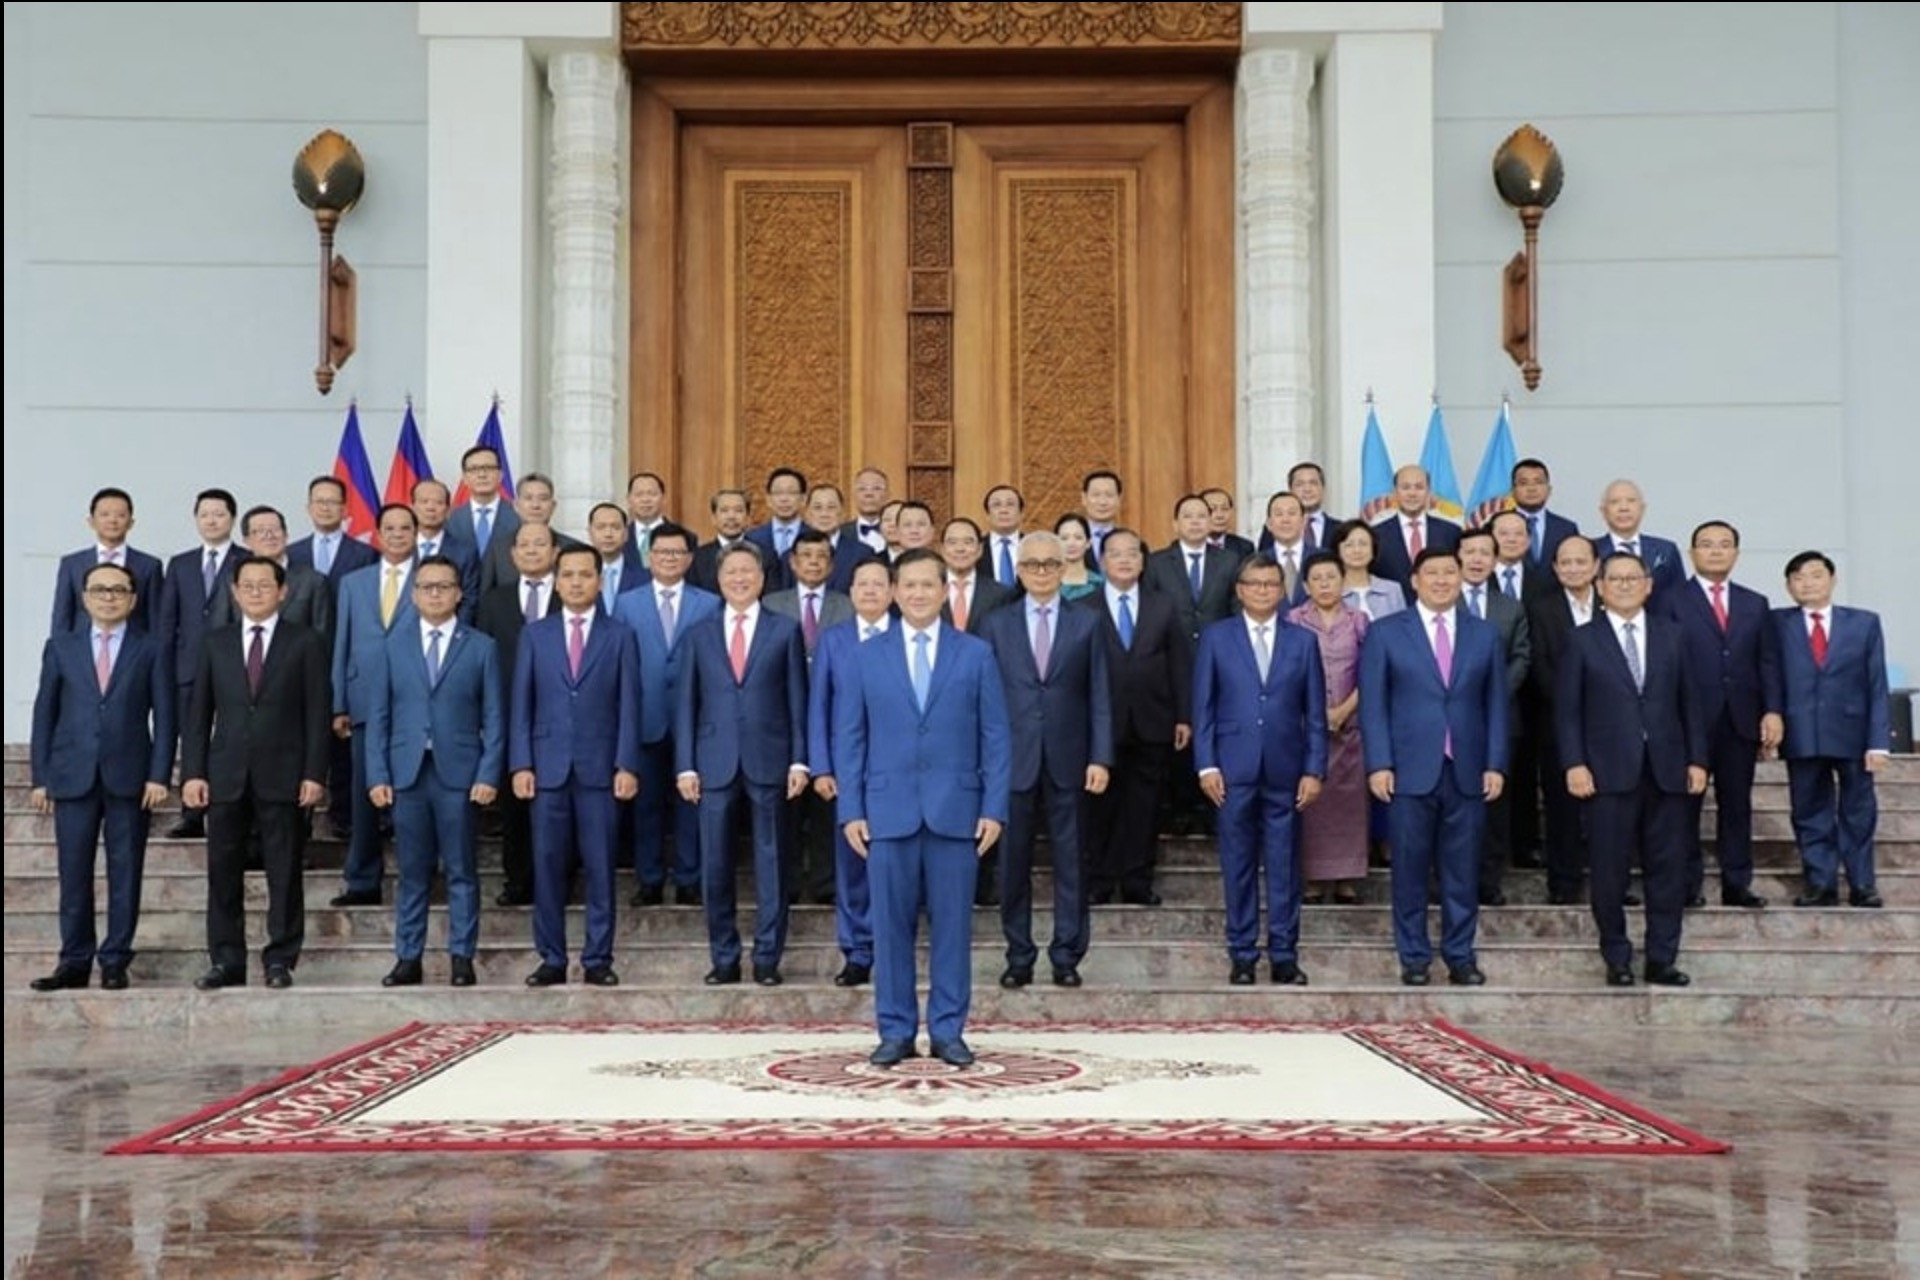 Chính phủ mới của Campuchia có 1 Thủ tướng, 10 Phó Thủ tướng